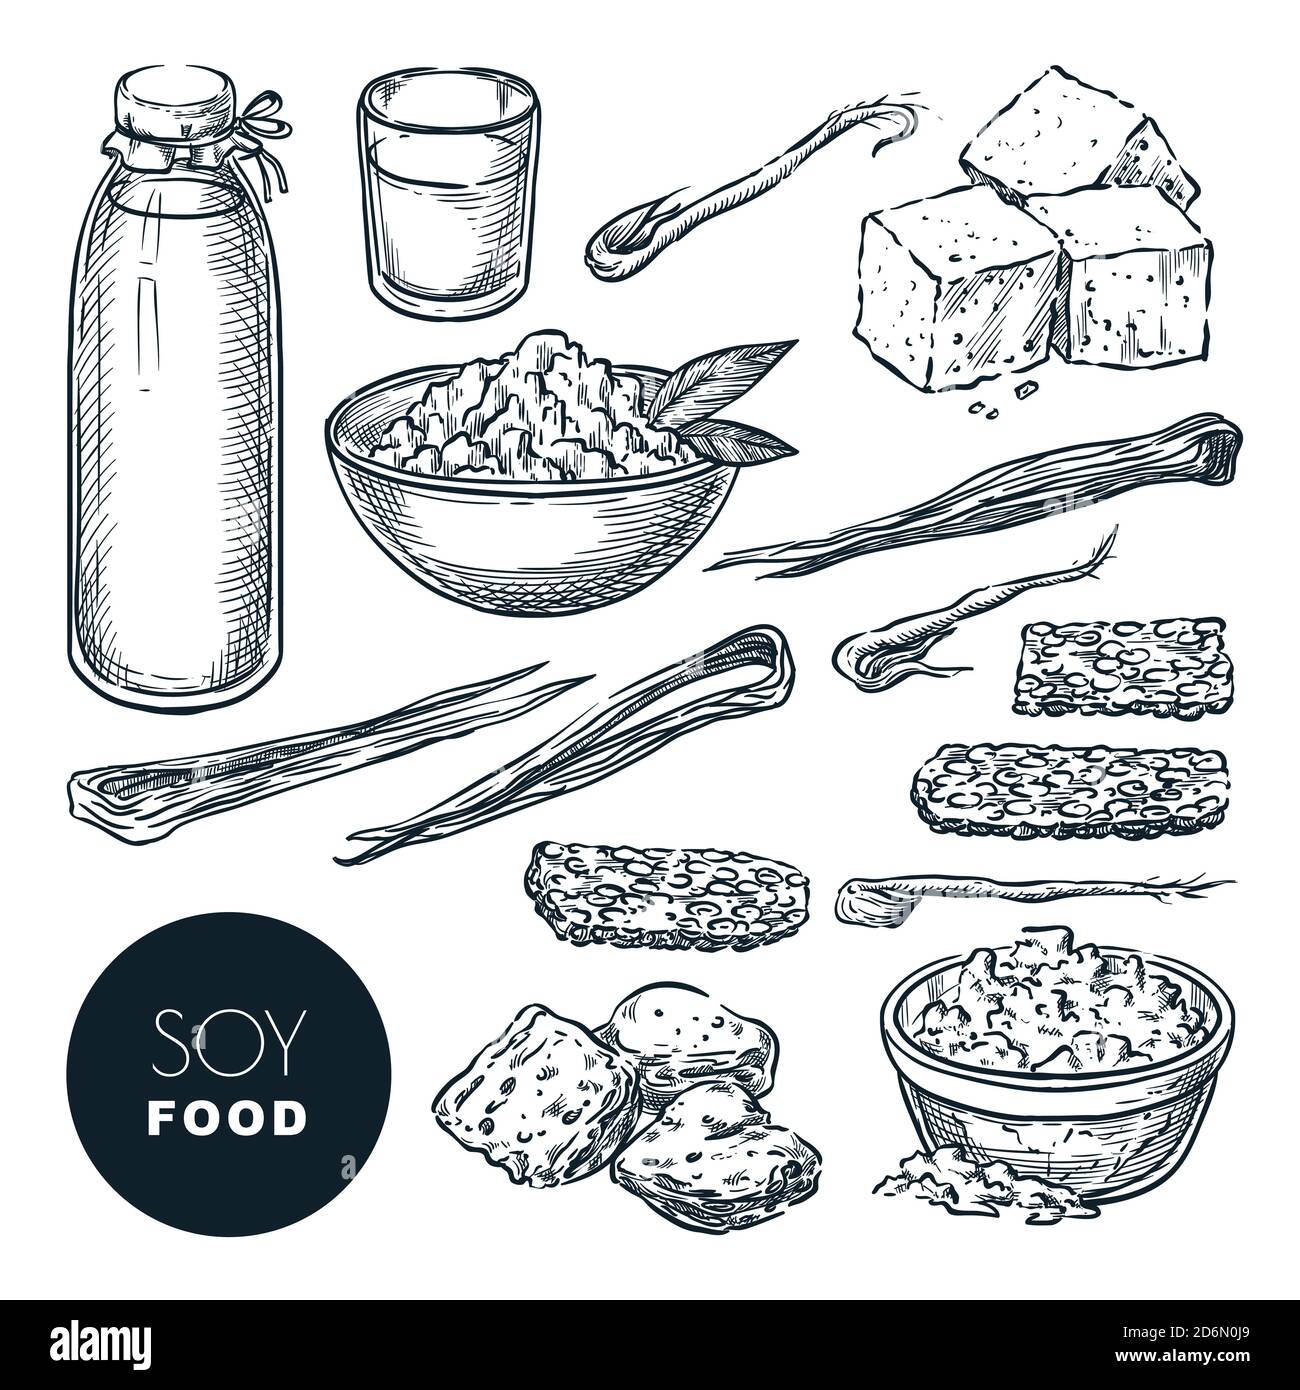 Soja Lebensmittel vegetarische Produkte Skizze Vektor Illustration. Sojamilch, Tofu, Sprossen, Fleisch. Handgezeichnete isolierte Designelemente. Stock Vektor